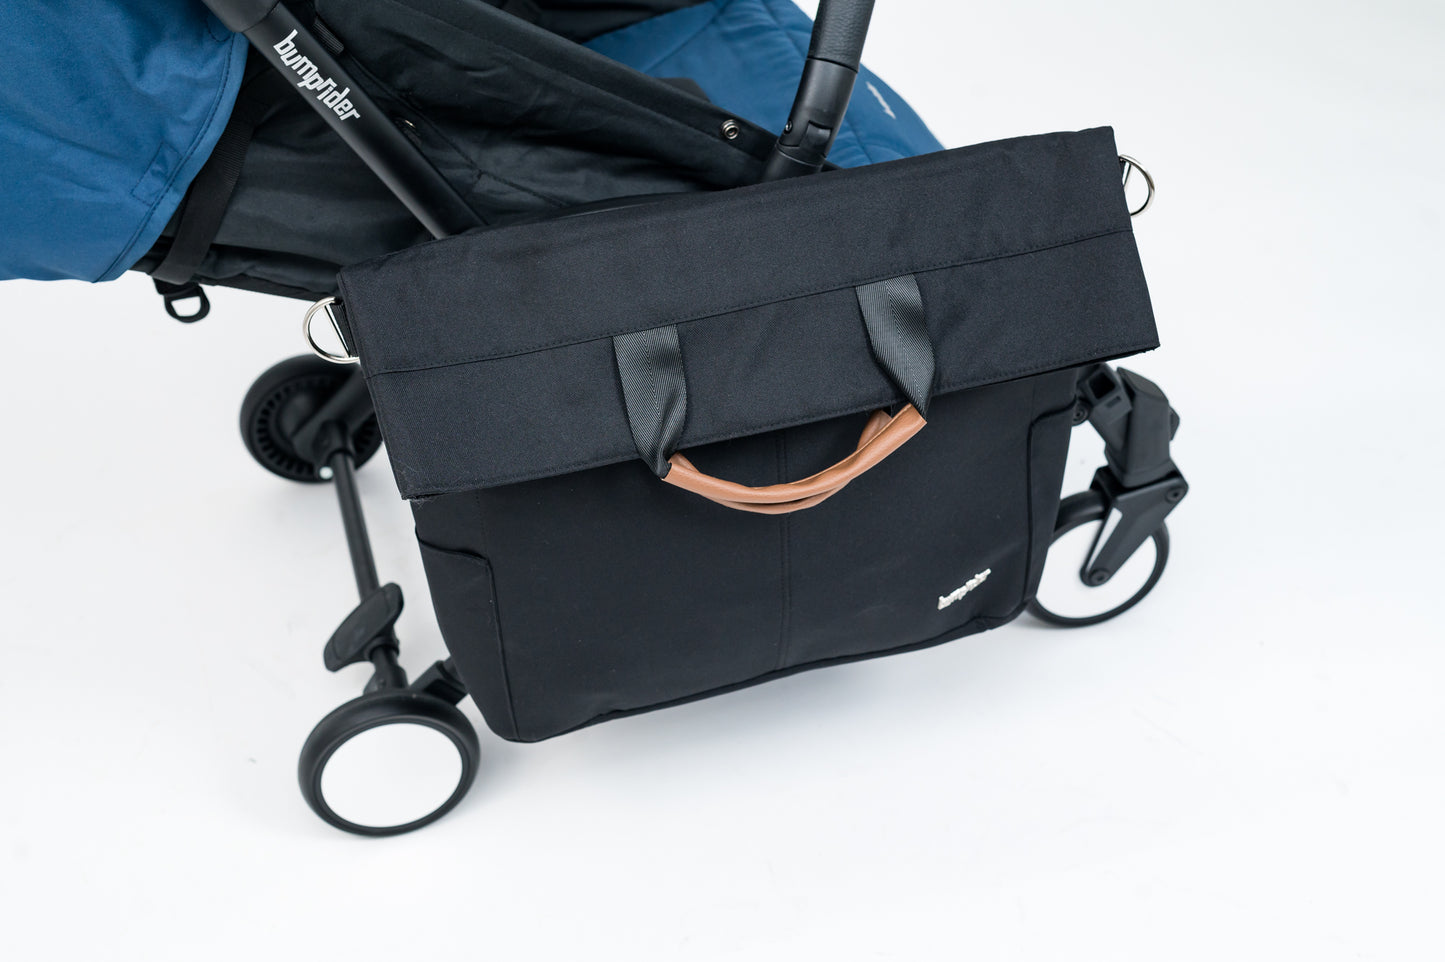 Bumprider Connect Sidebag Black/Brown on Blue Stroller